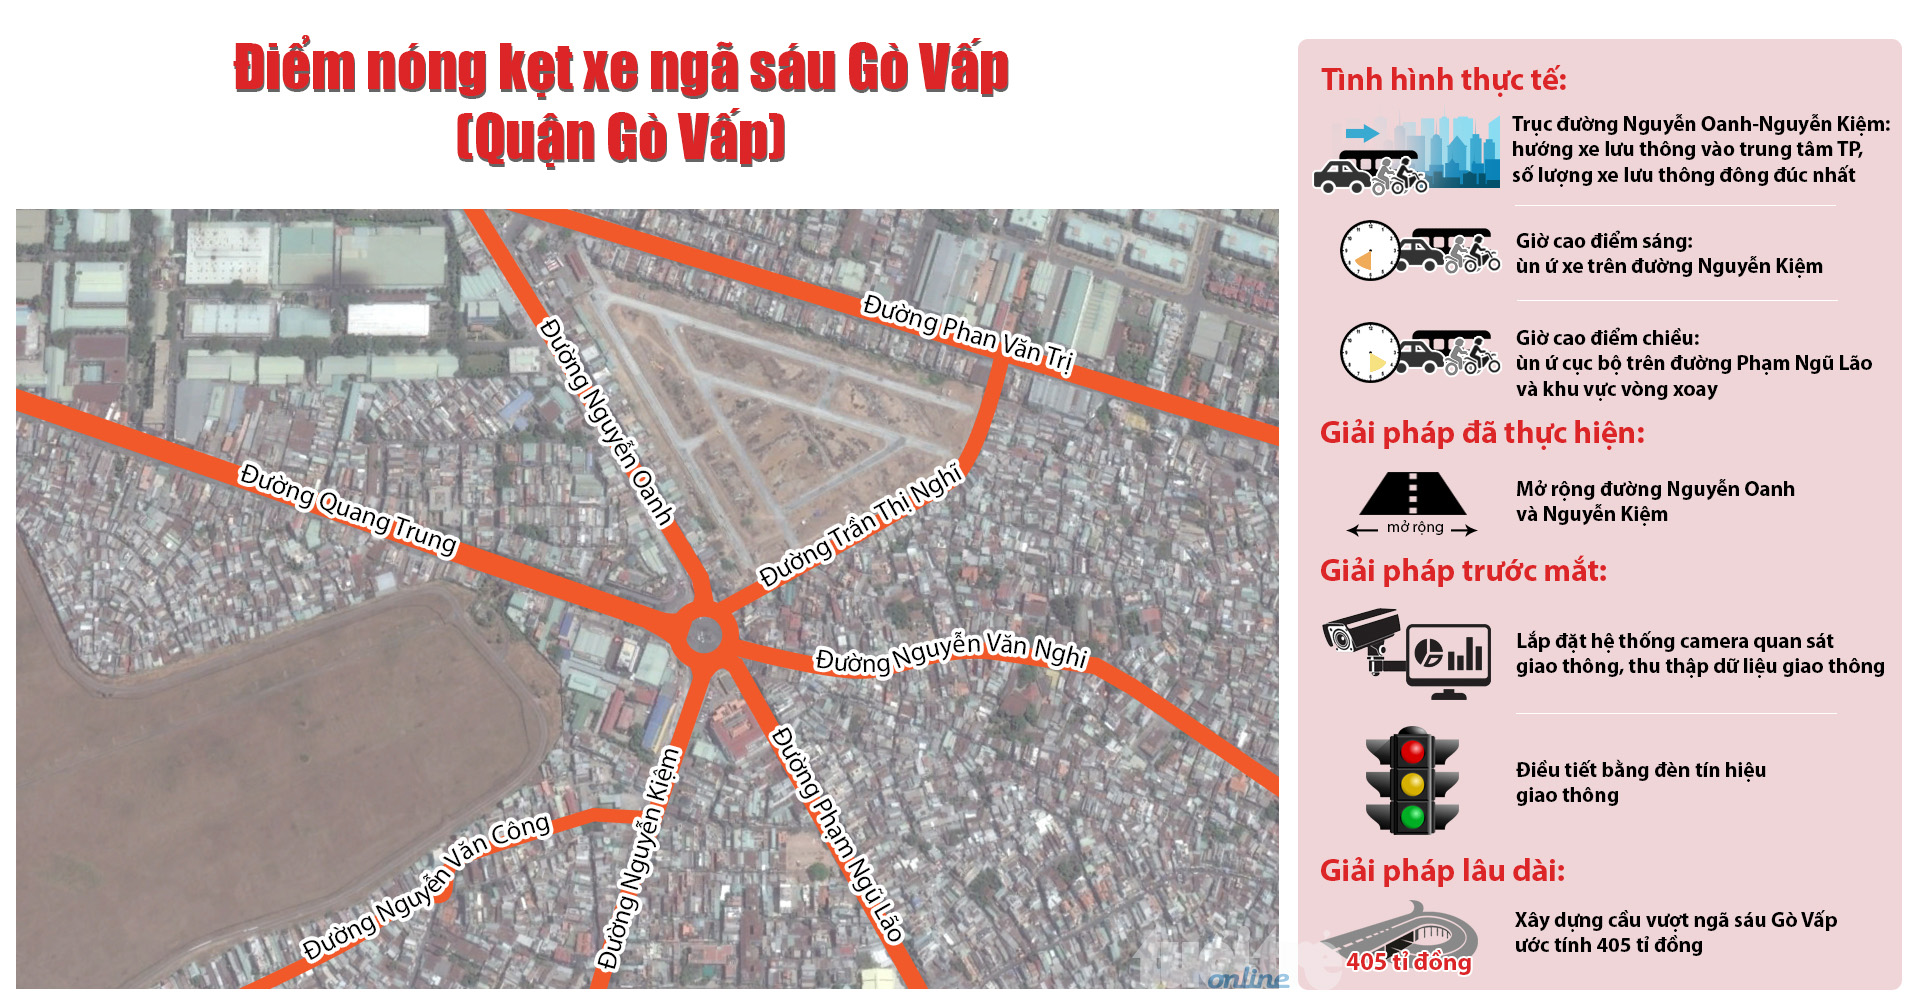 Điểm nóng kẹt xe ngã sáu Gò Vấp (quận Gò Vấp): thực trạng và giải pháp đề xuất - Đồ họa: Việt Thái - T.Thiên